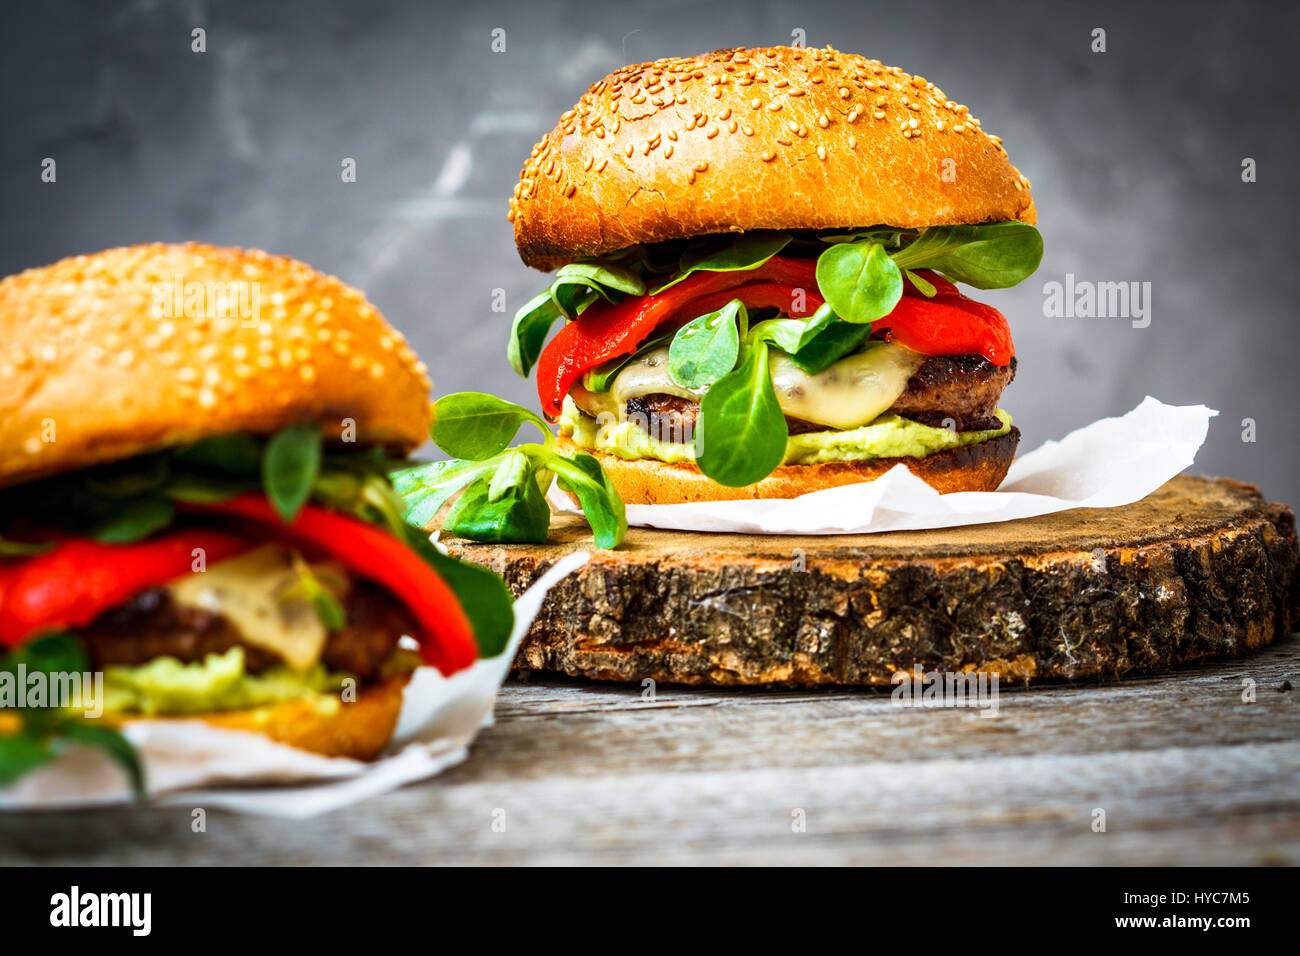 Tasty burger de bœuf grillé avec du fromage, de guacamole et de poivrons marinés. Fond sombre, brown paper, support en bois. Banque D'Images